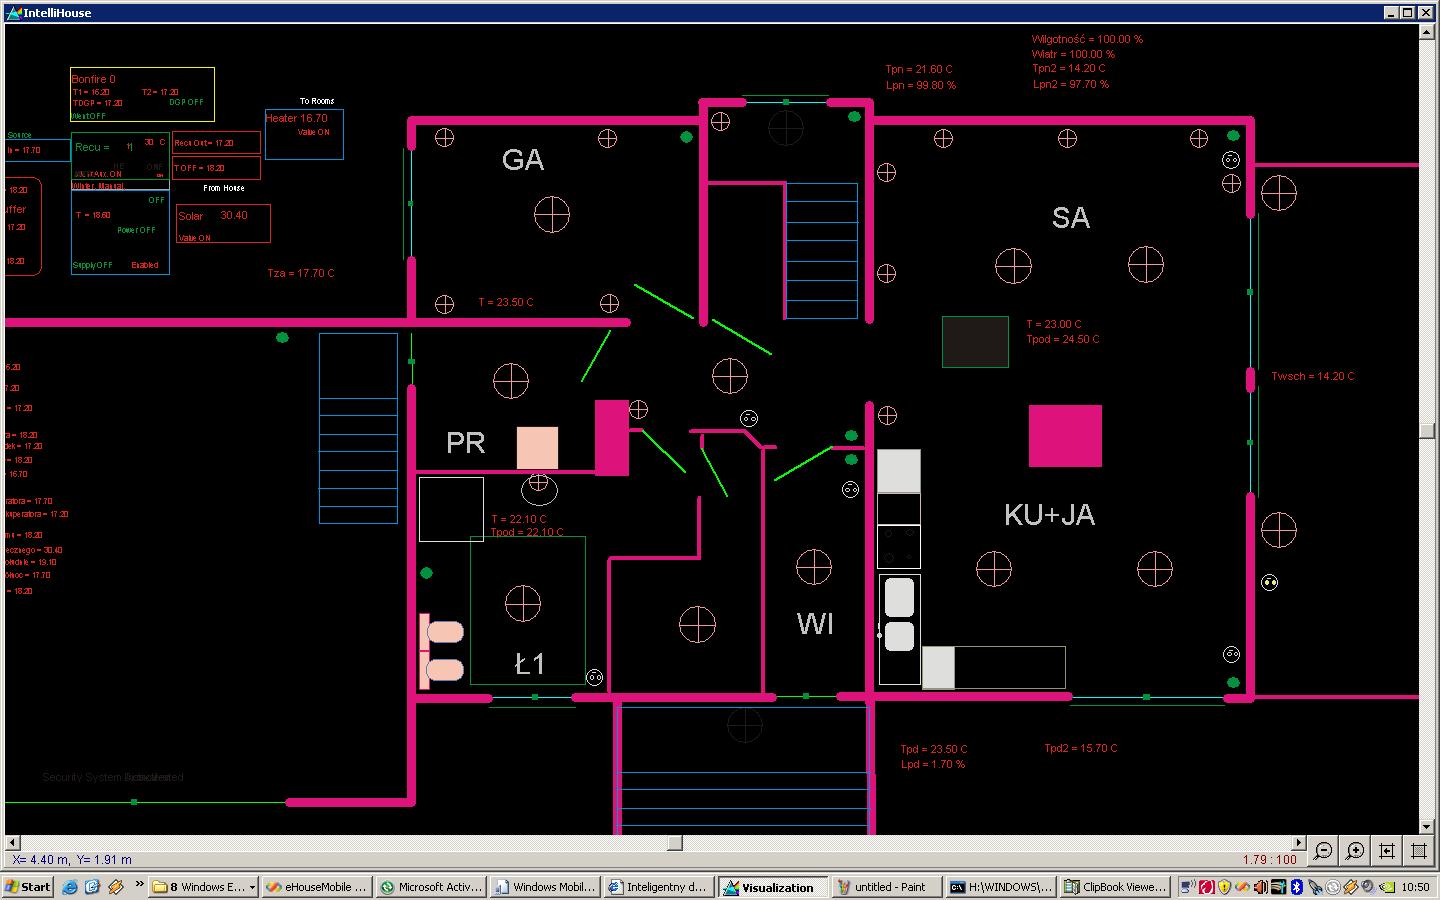 Construcción inteligente de eHouse, administración del hogar desde una PC y paneles de Windows XP, vista, visualización en 7 PC